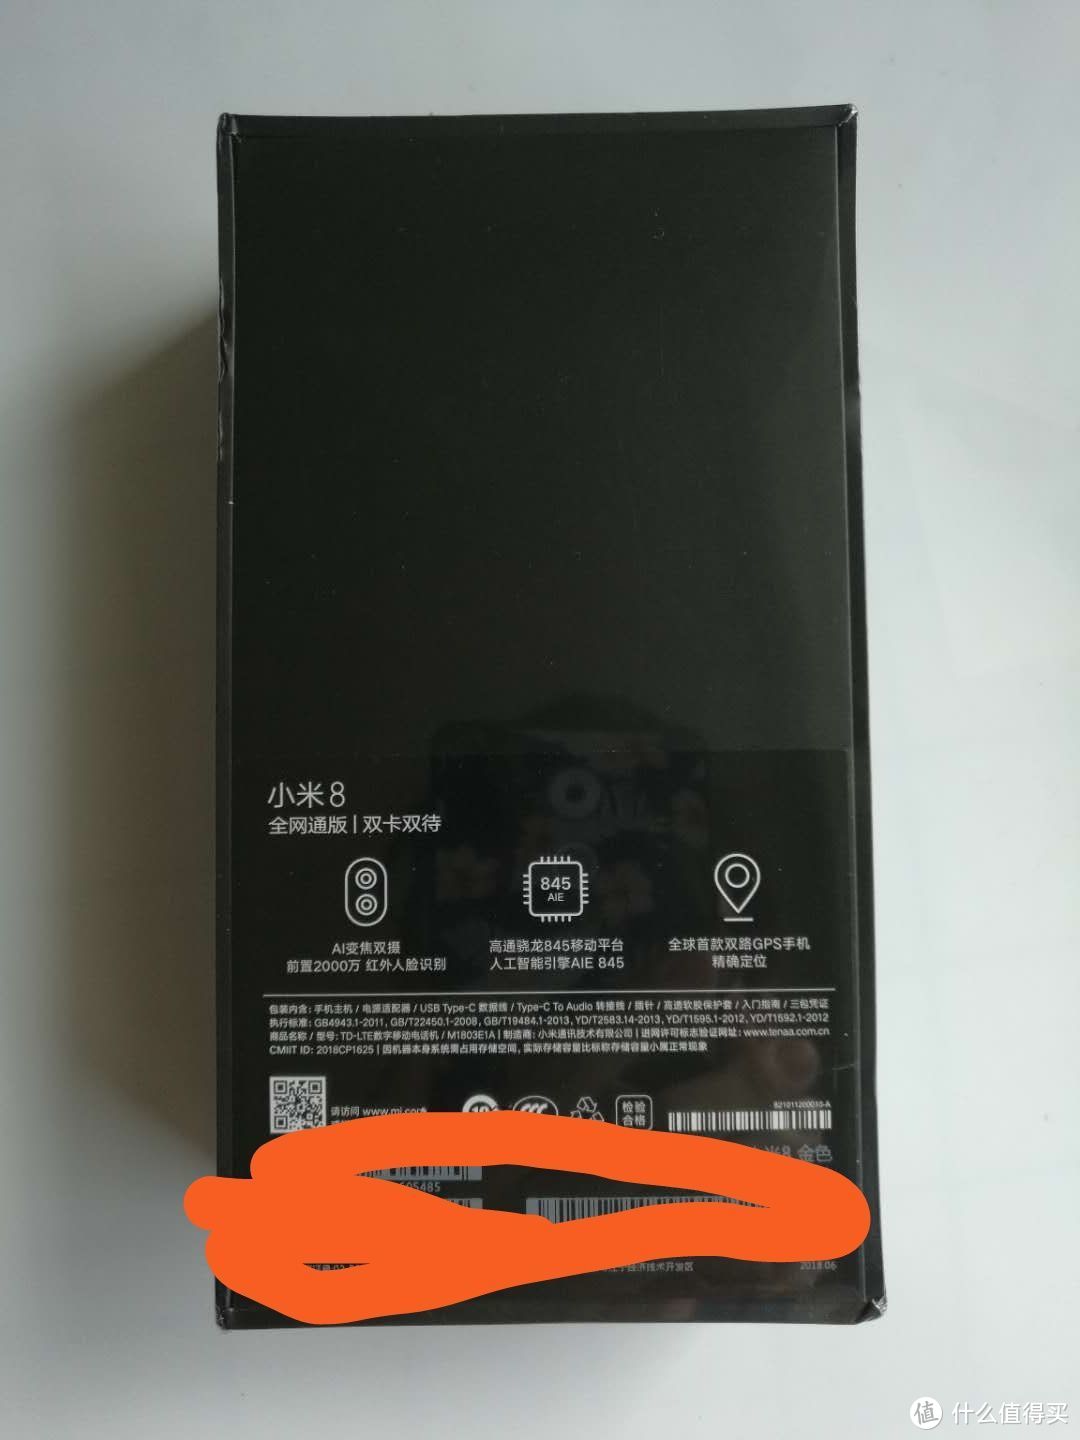 意外买到MI 小米8 手机，附简单开箱